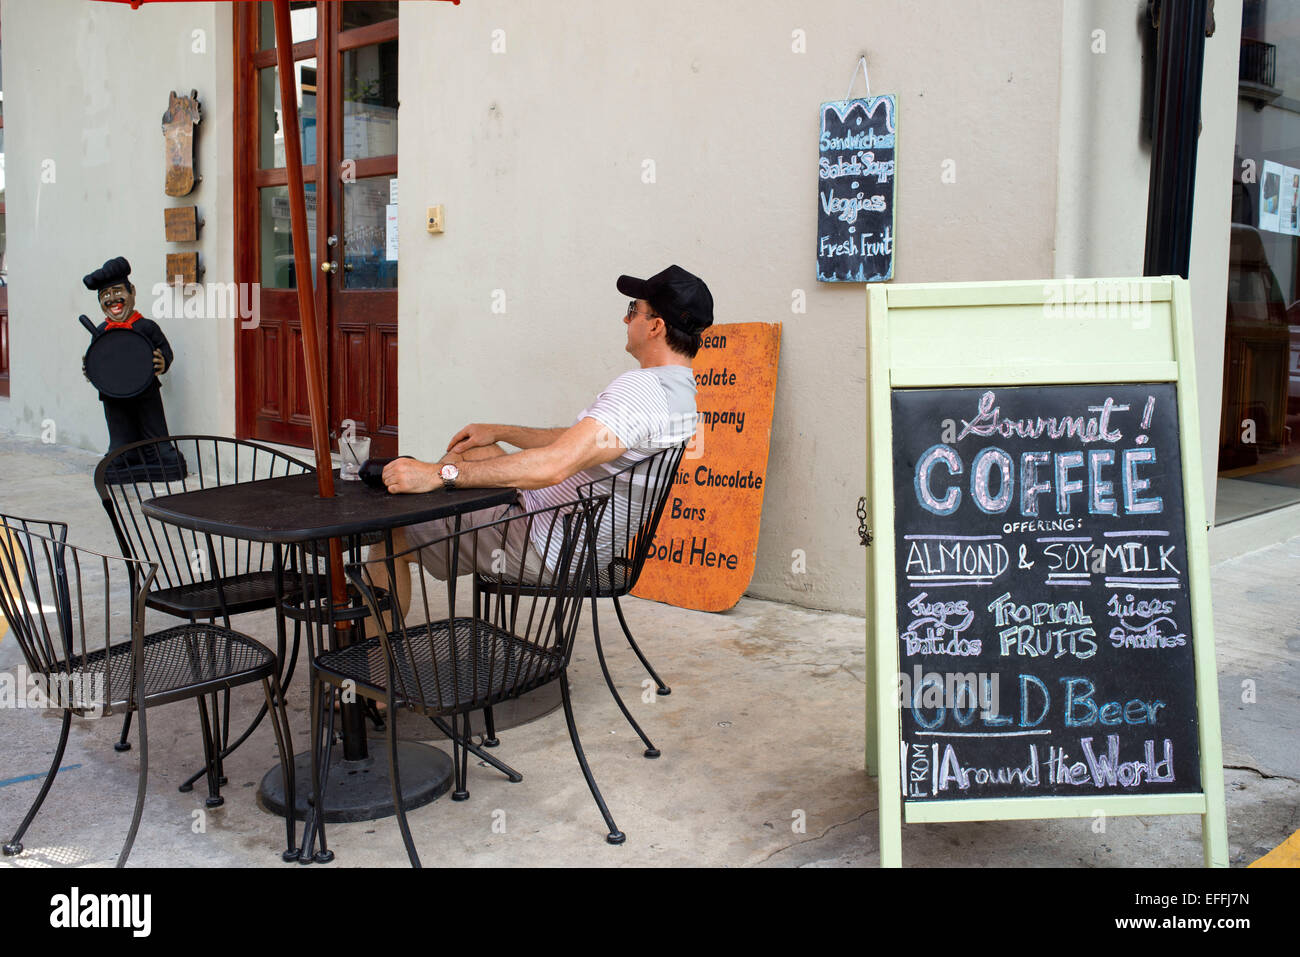 Snack bar caffè ristorante nella vecchia città di Panama, Panama America centrale. I cibi tradizionali. Panama Viejo città storica elencata come Foto Stock